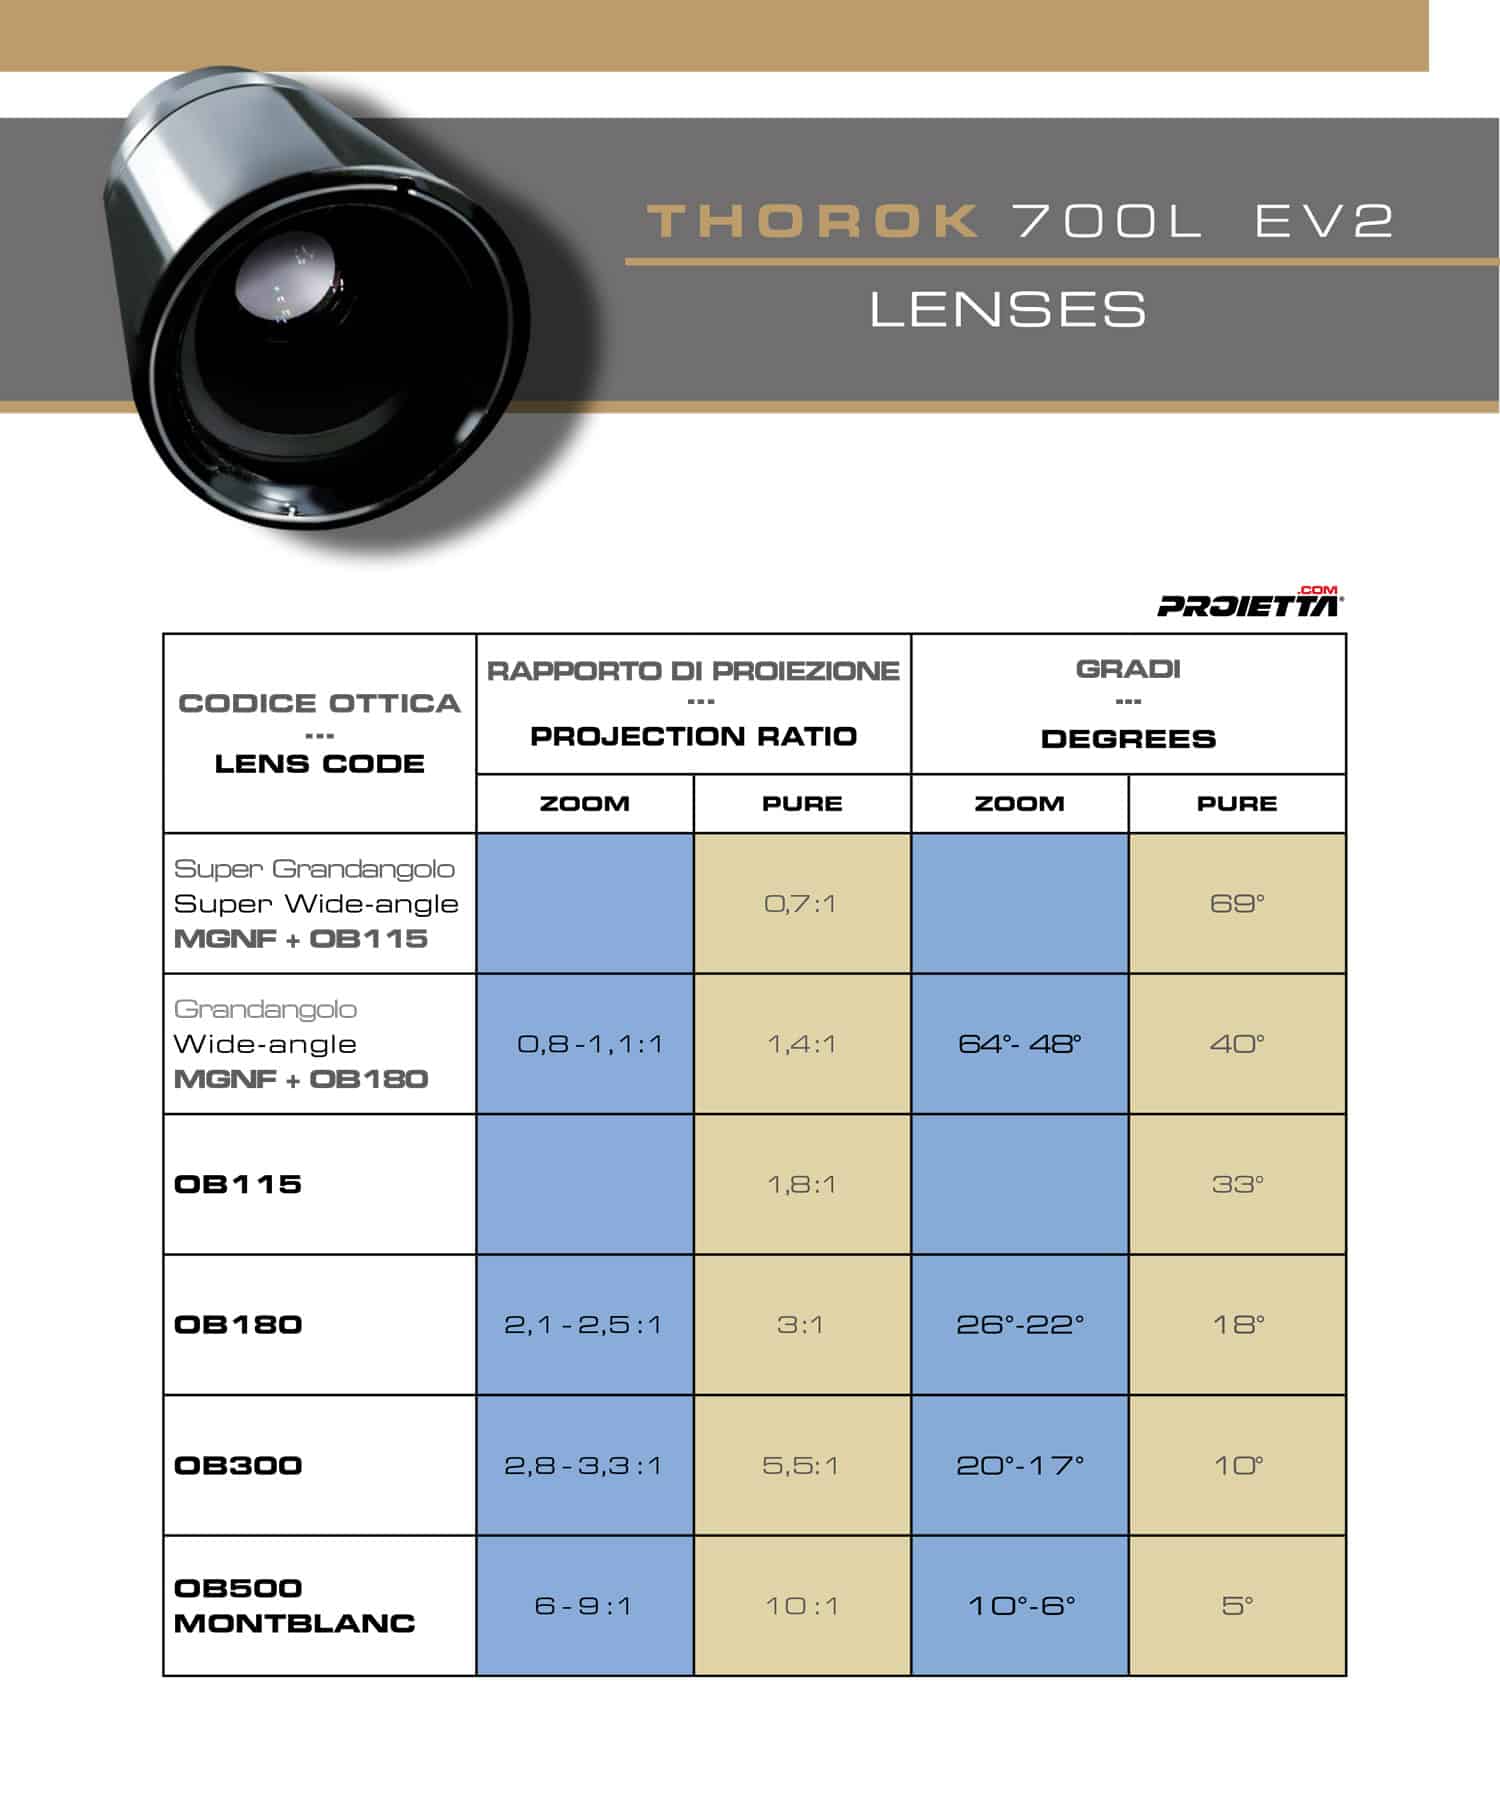 Thorok Led 700L lenses